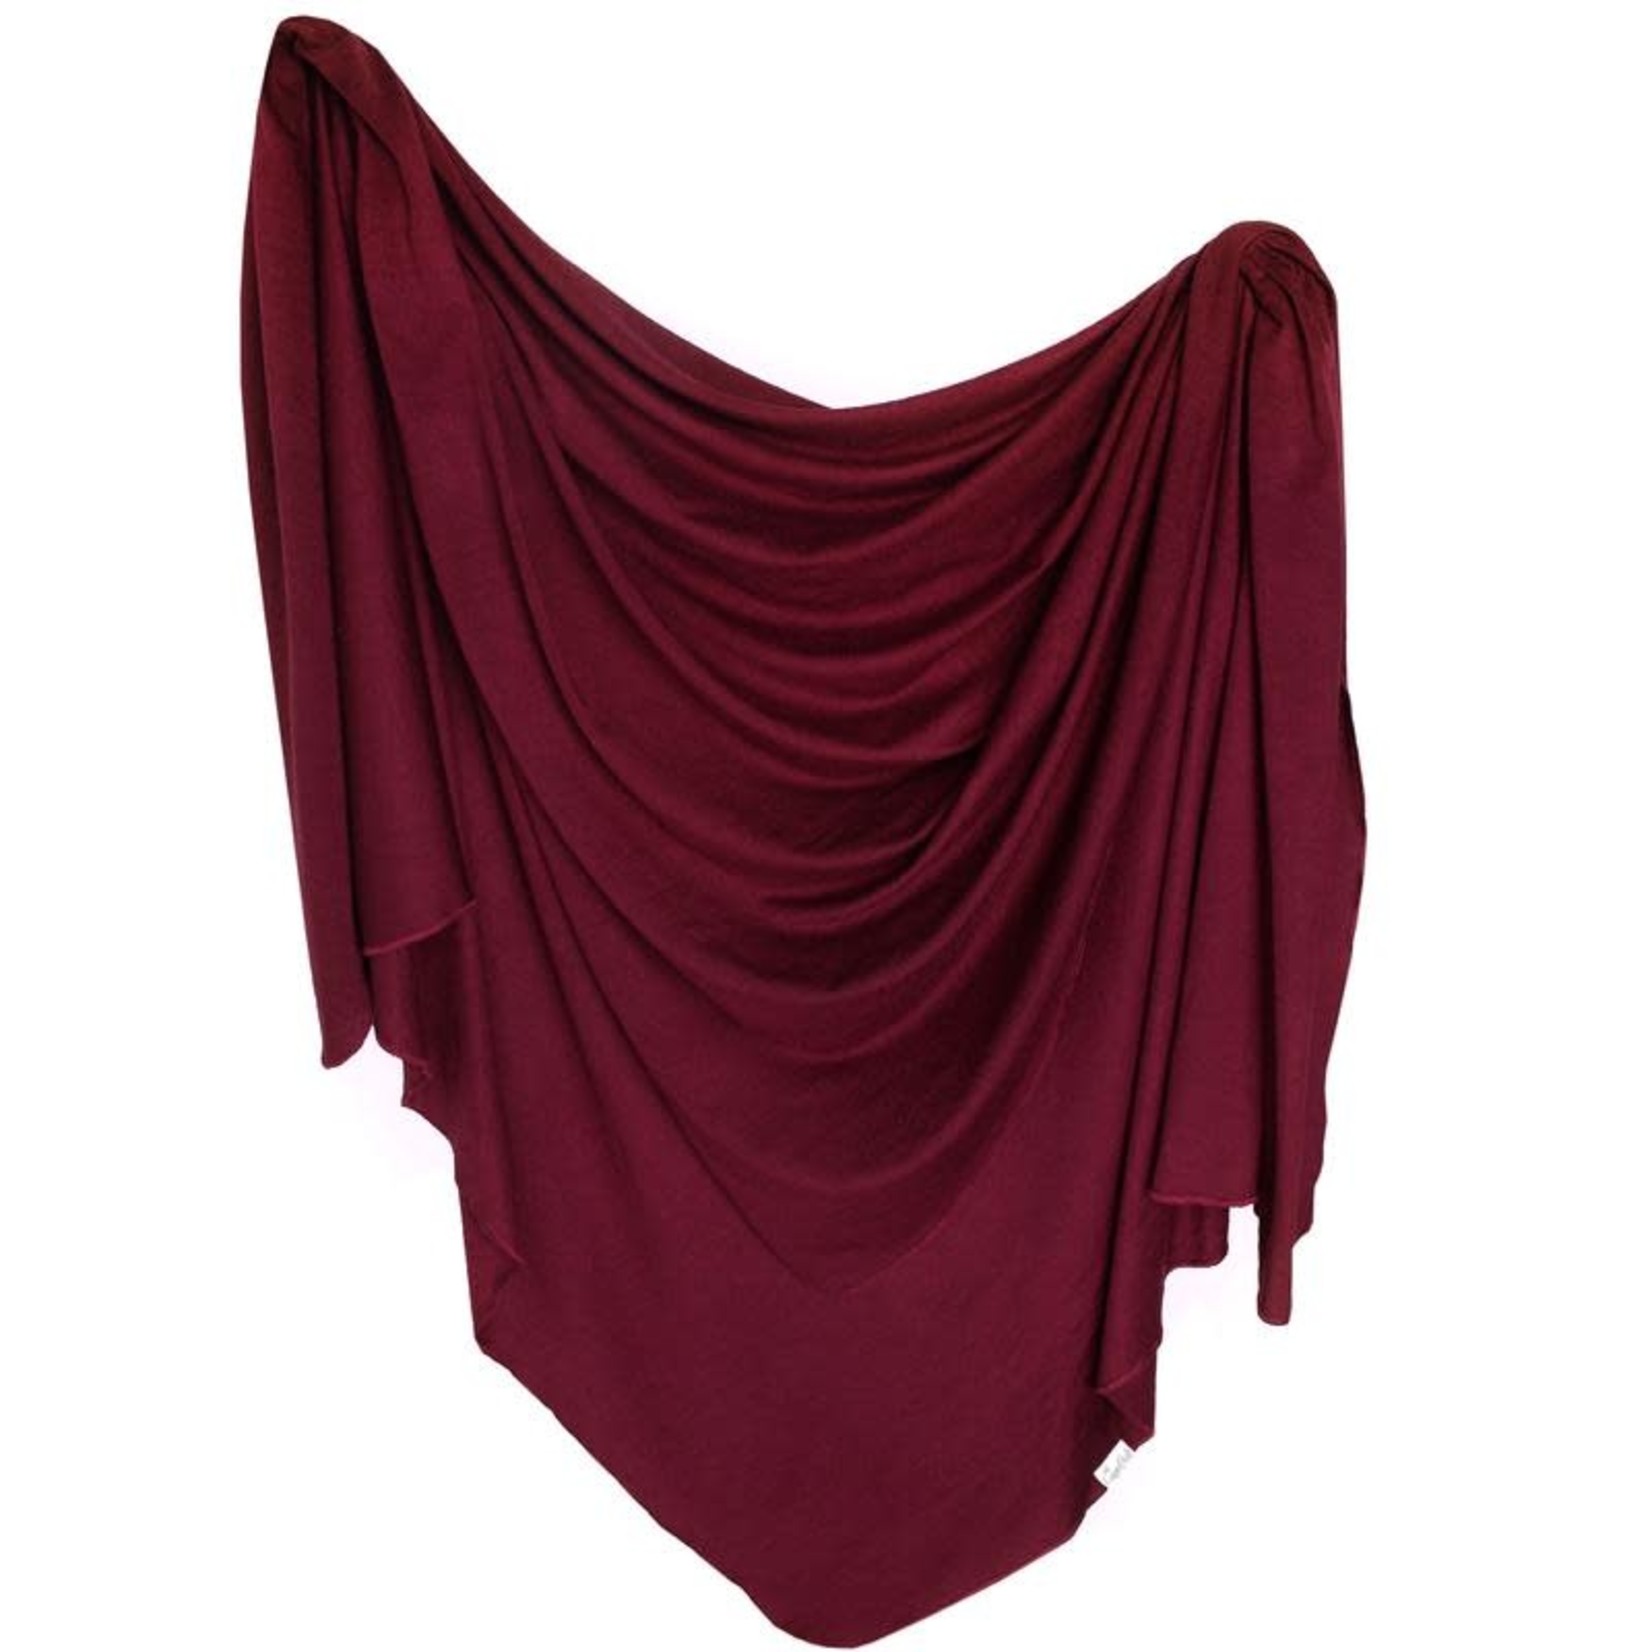 Copper Pearl Knit Blanket - Ruby